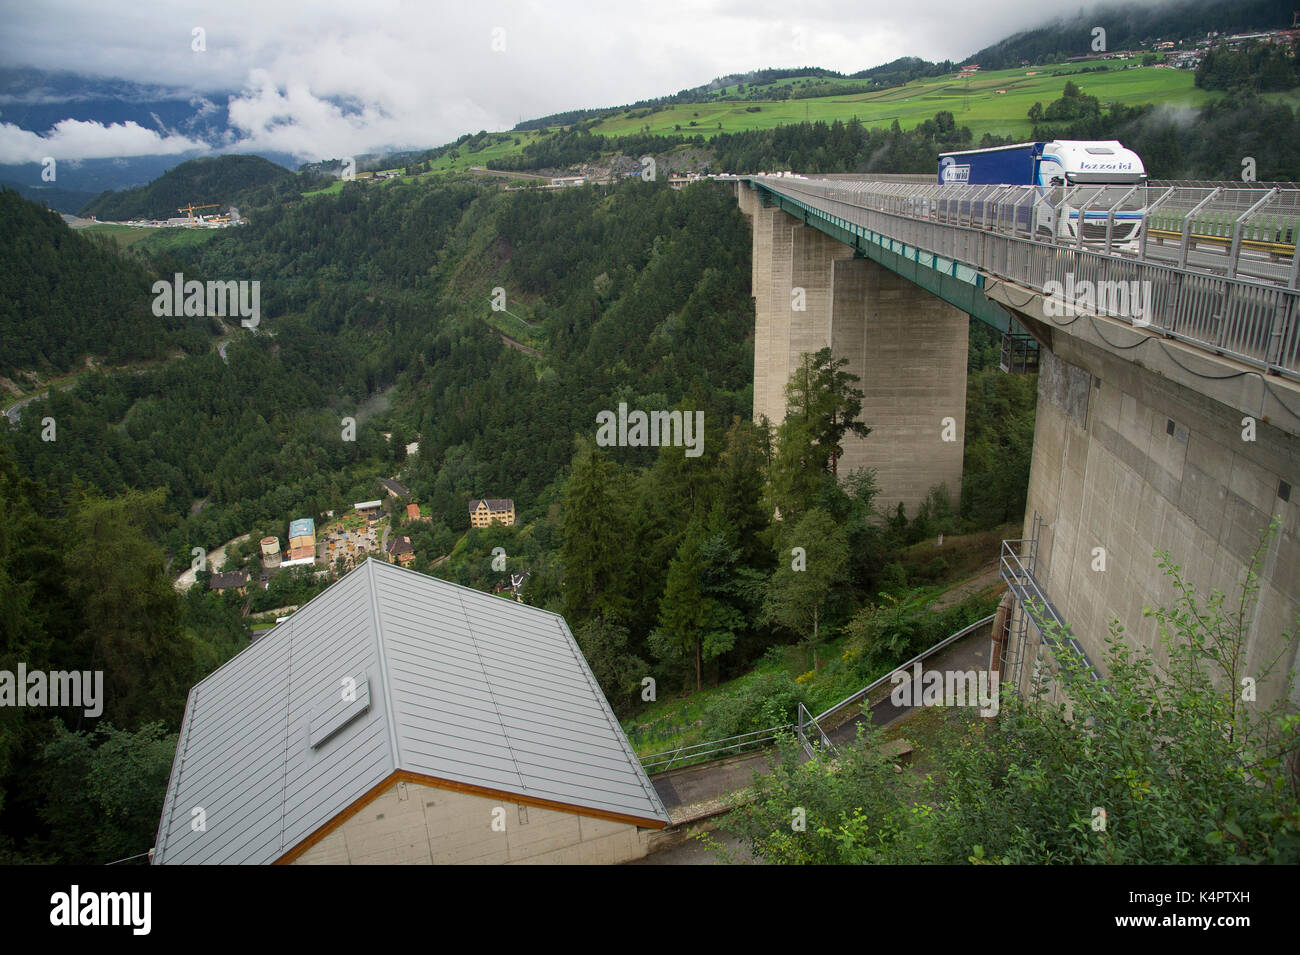 Kleines Dorf in Österreich will Brenner-Autobahn auf Jahre lahmlegen